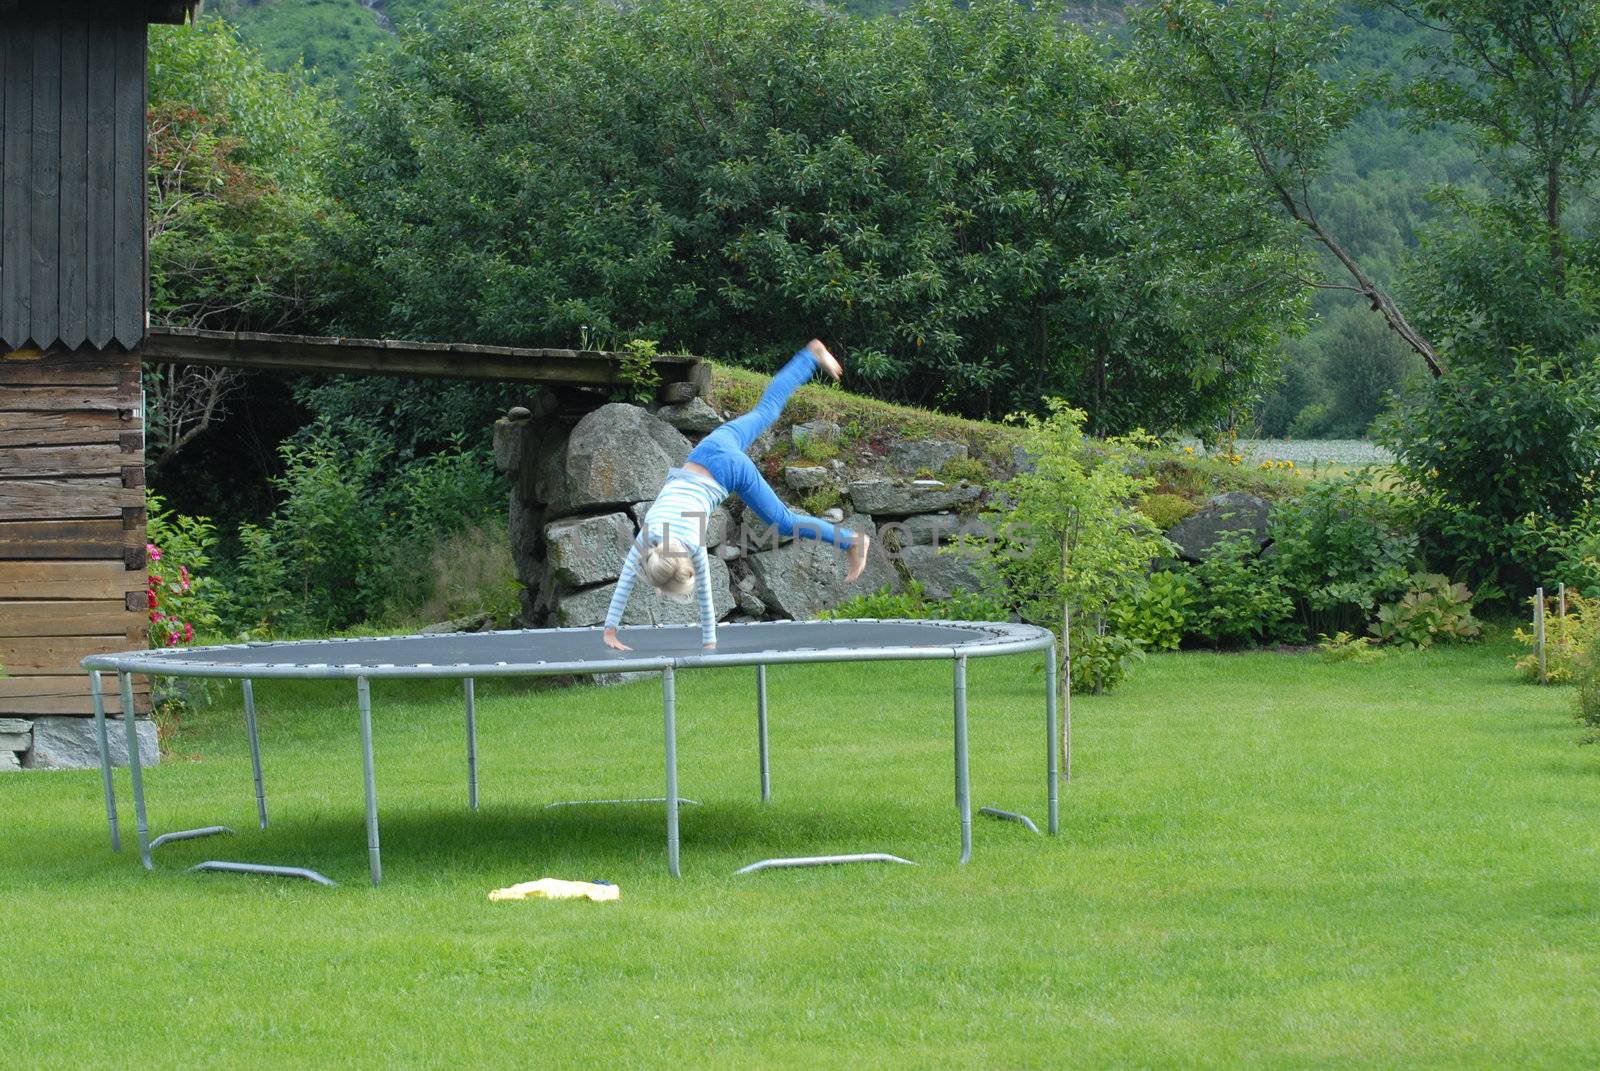 Girl exercising on trampoline